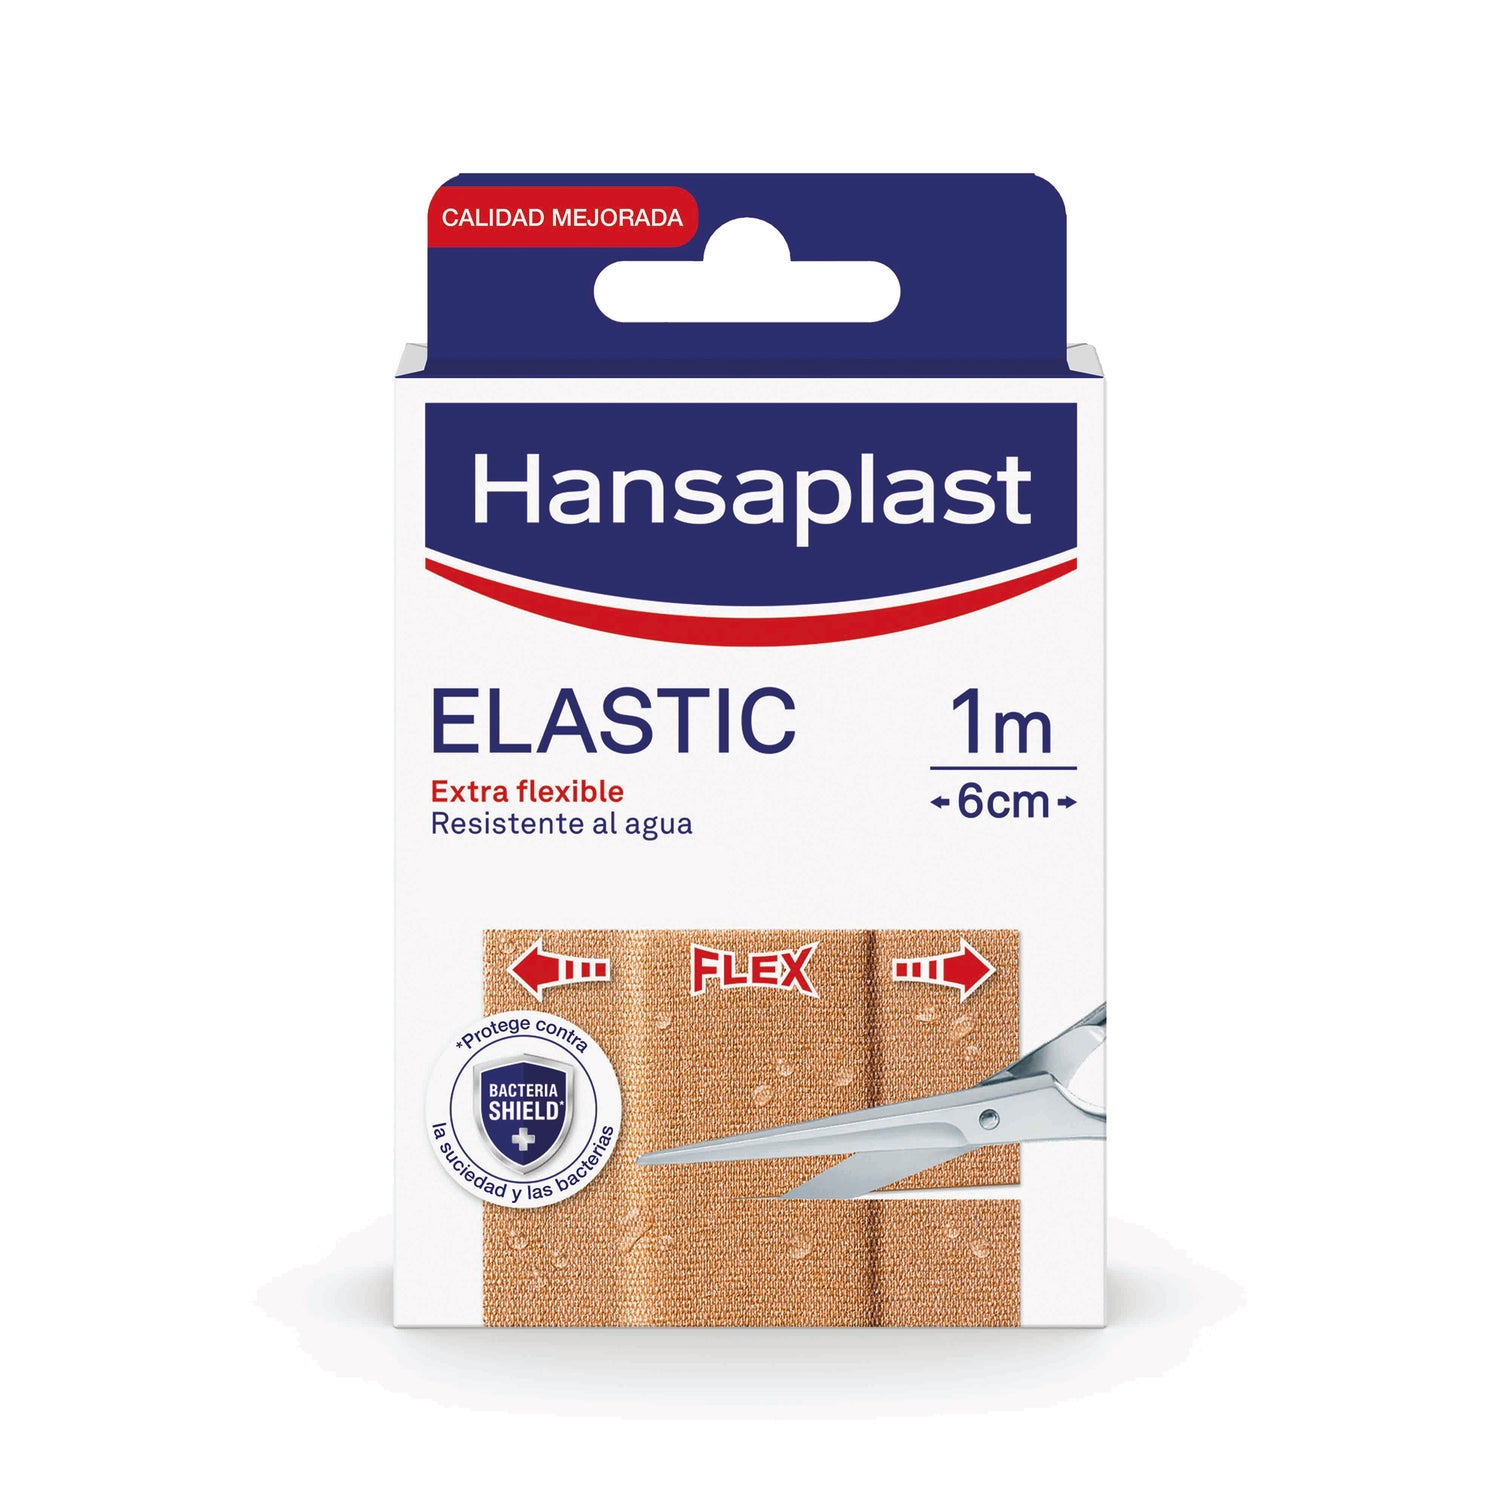 Hansaplast venda cohesiva para dedos azul 5mx2,5cm - Farmacia en